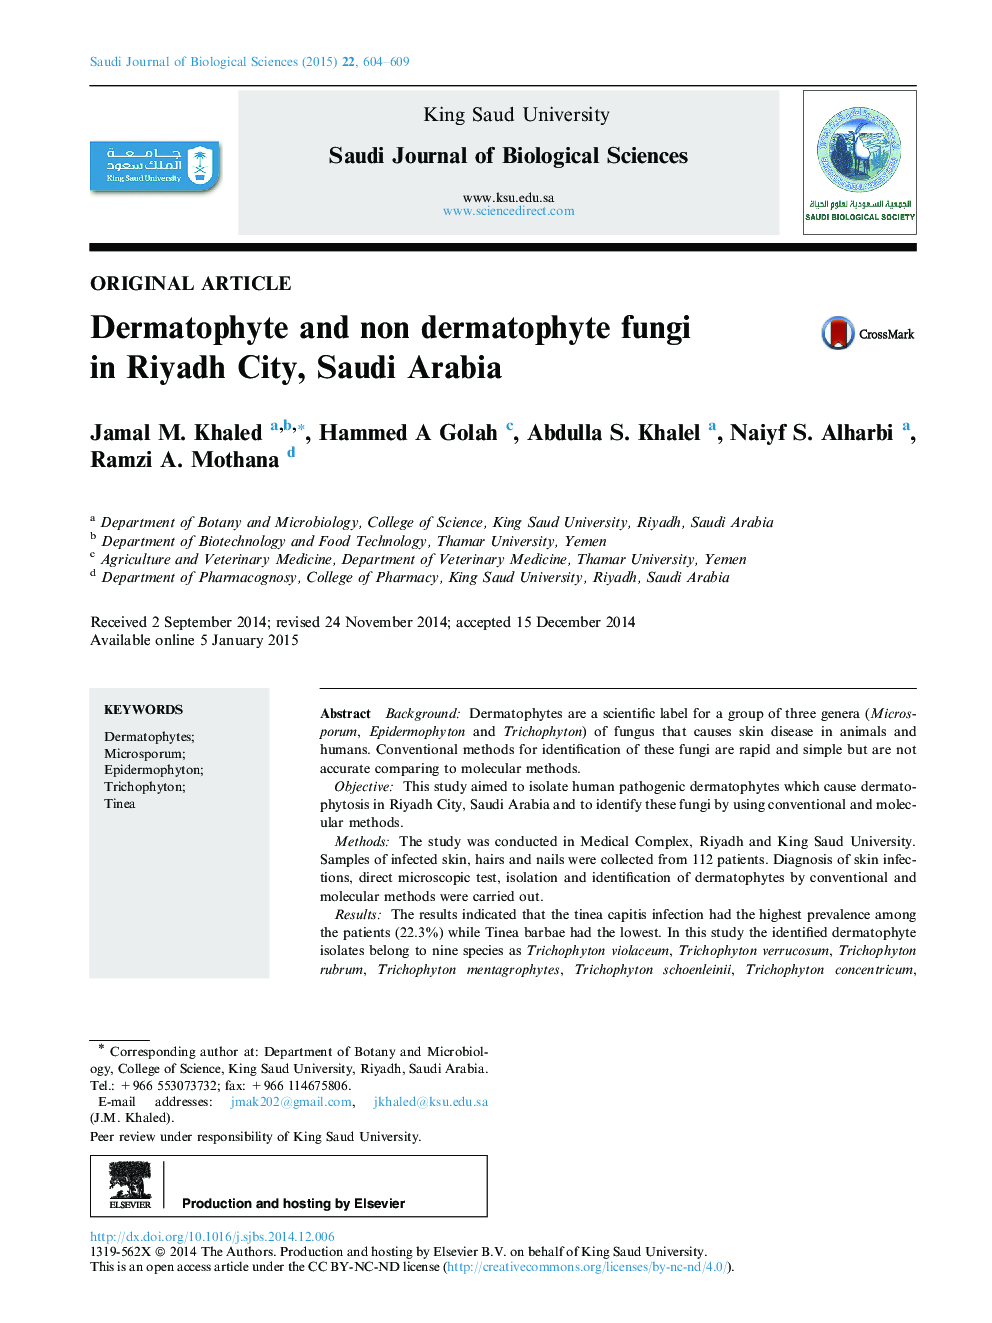 قارچ های درماتوفیت و غیر دارتفویت در شهر ریاض، عربستان سعودی 